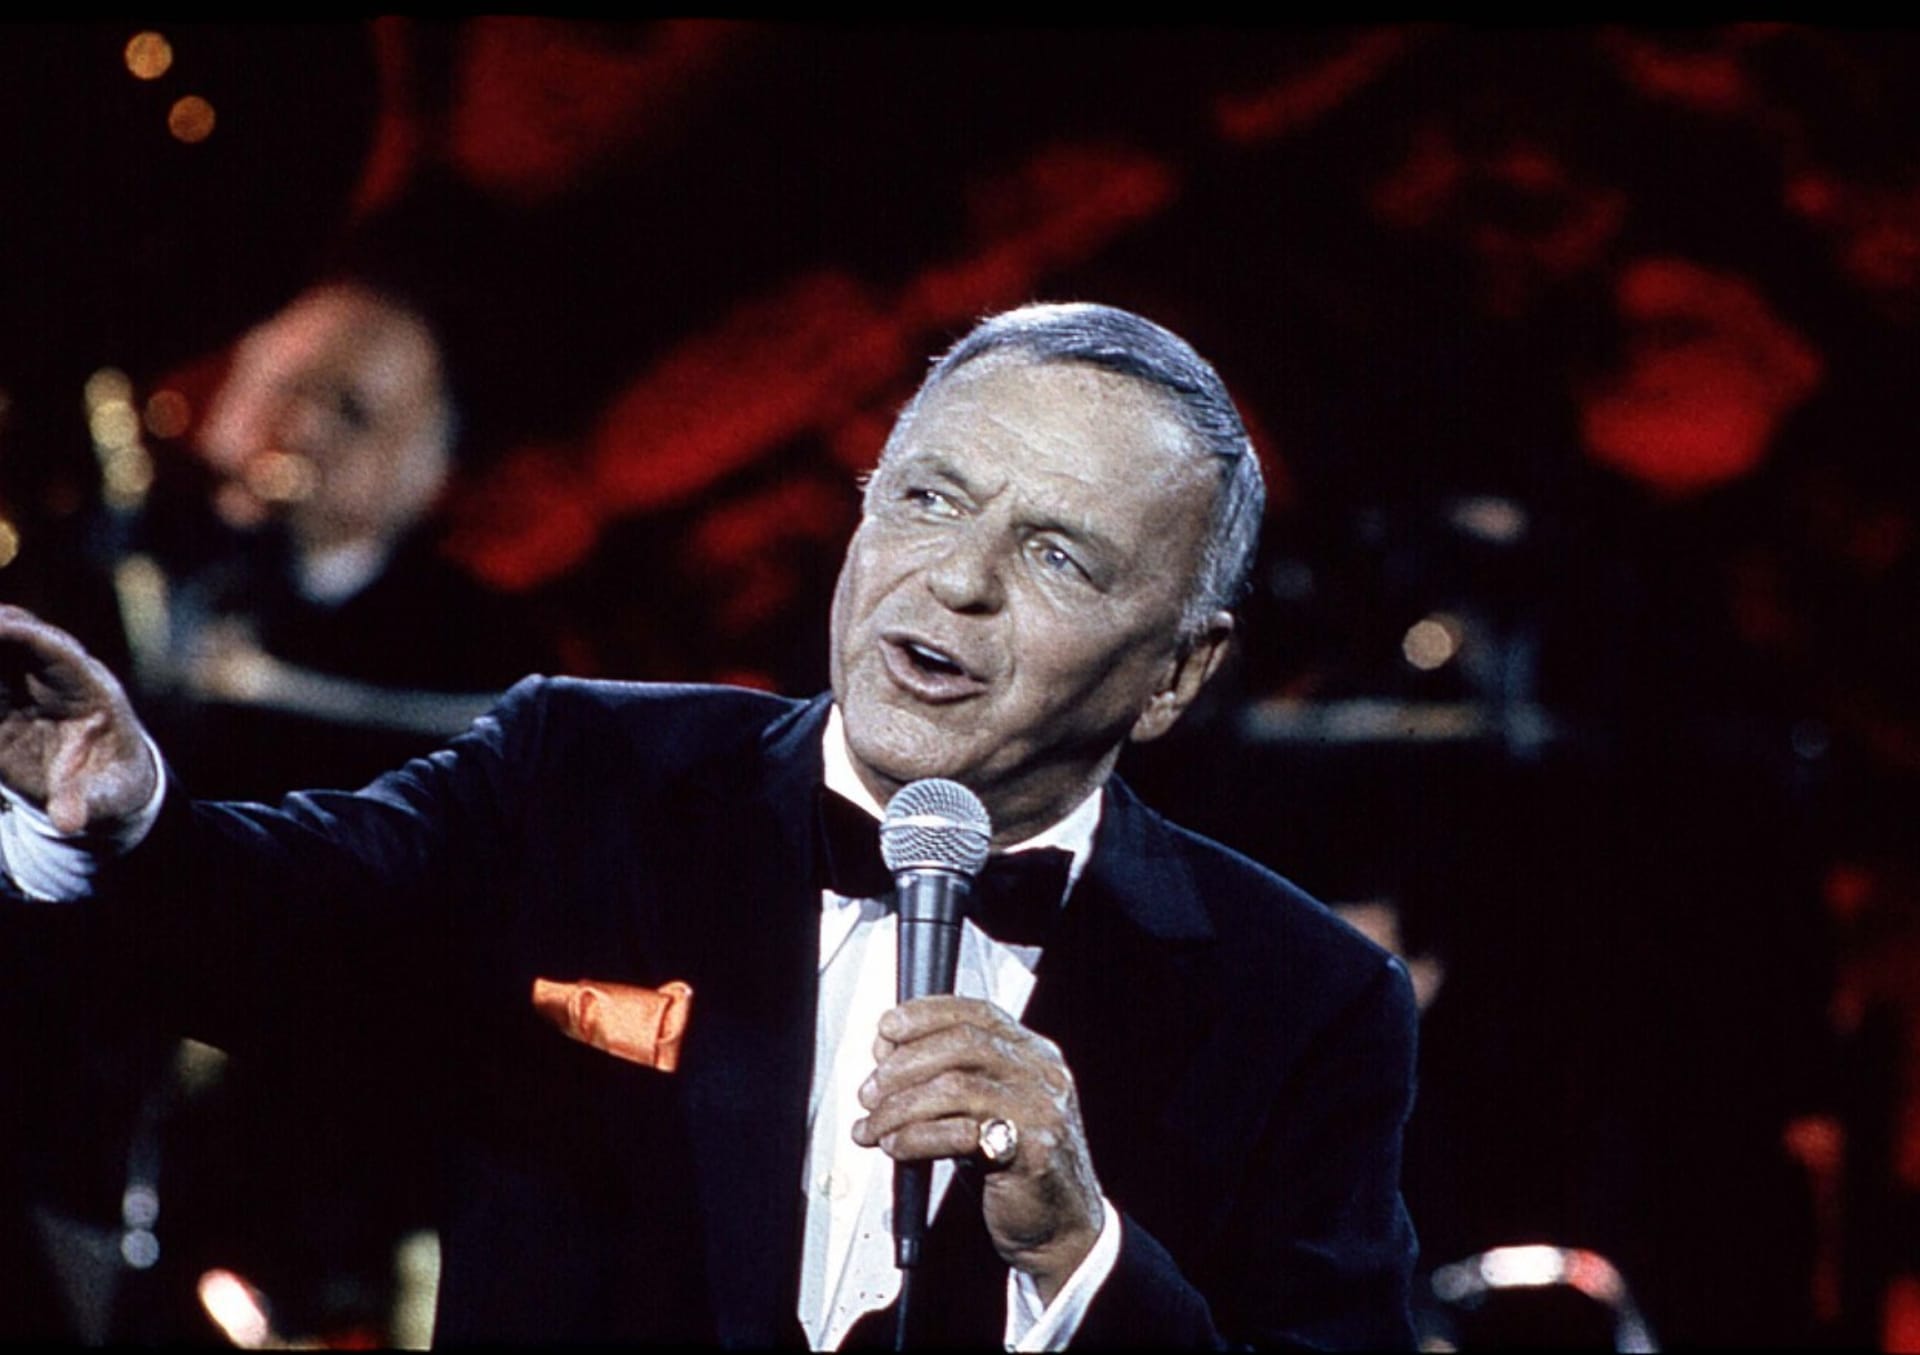 Legendární zpěvák Frank Sinatra